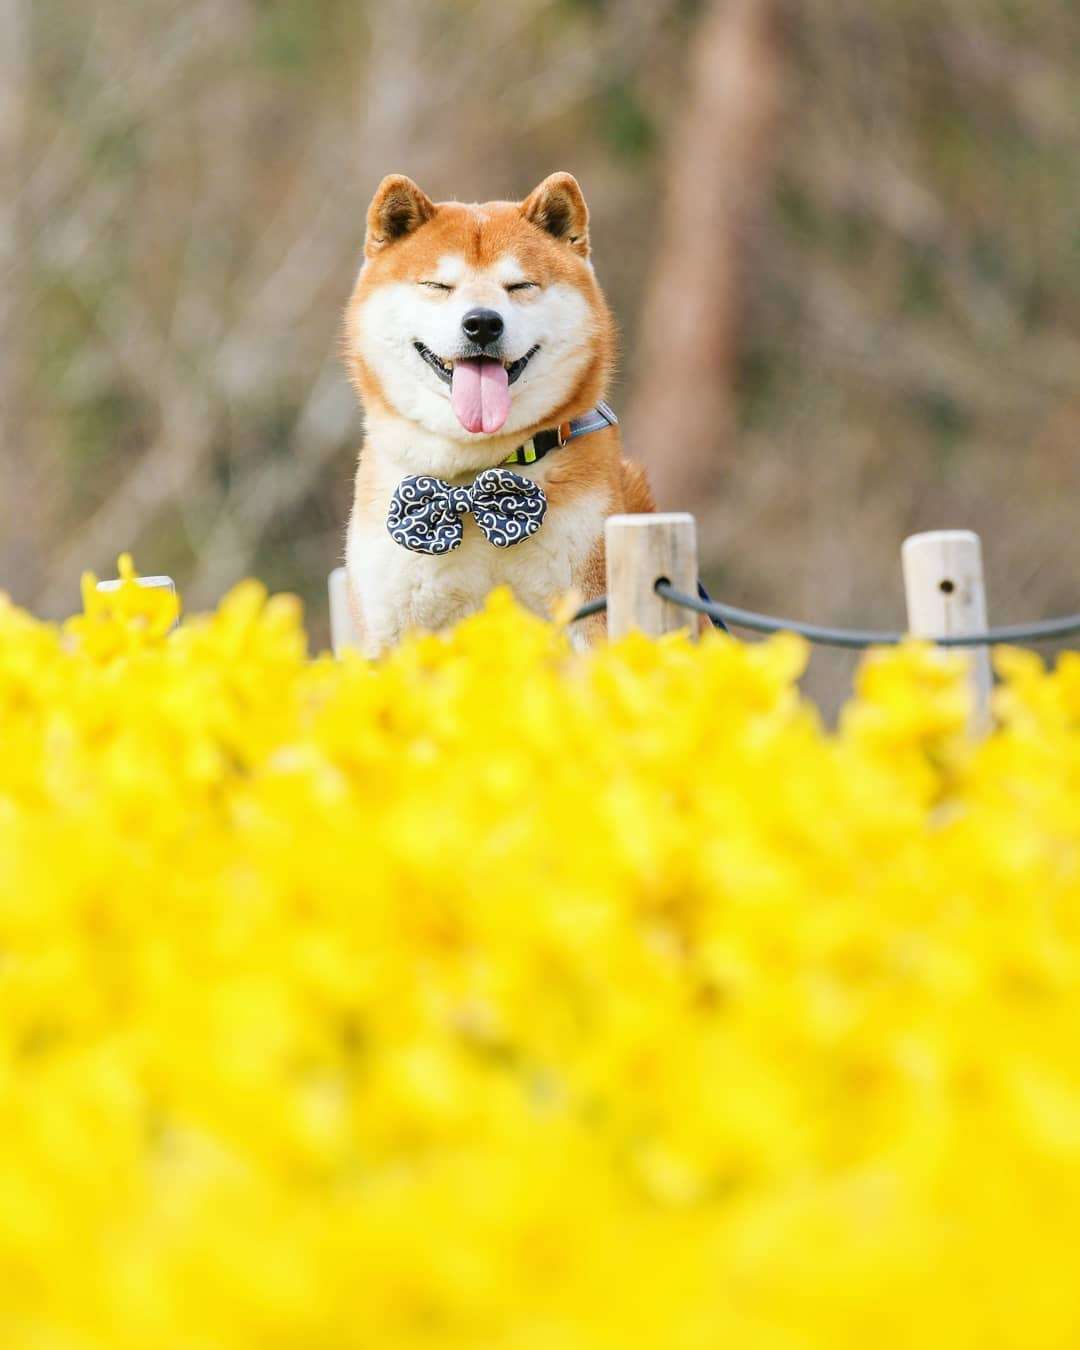 Фото этого улыбающегося пса на фоне цветов делают людей счастливыми, и это правда работает - фото 433969